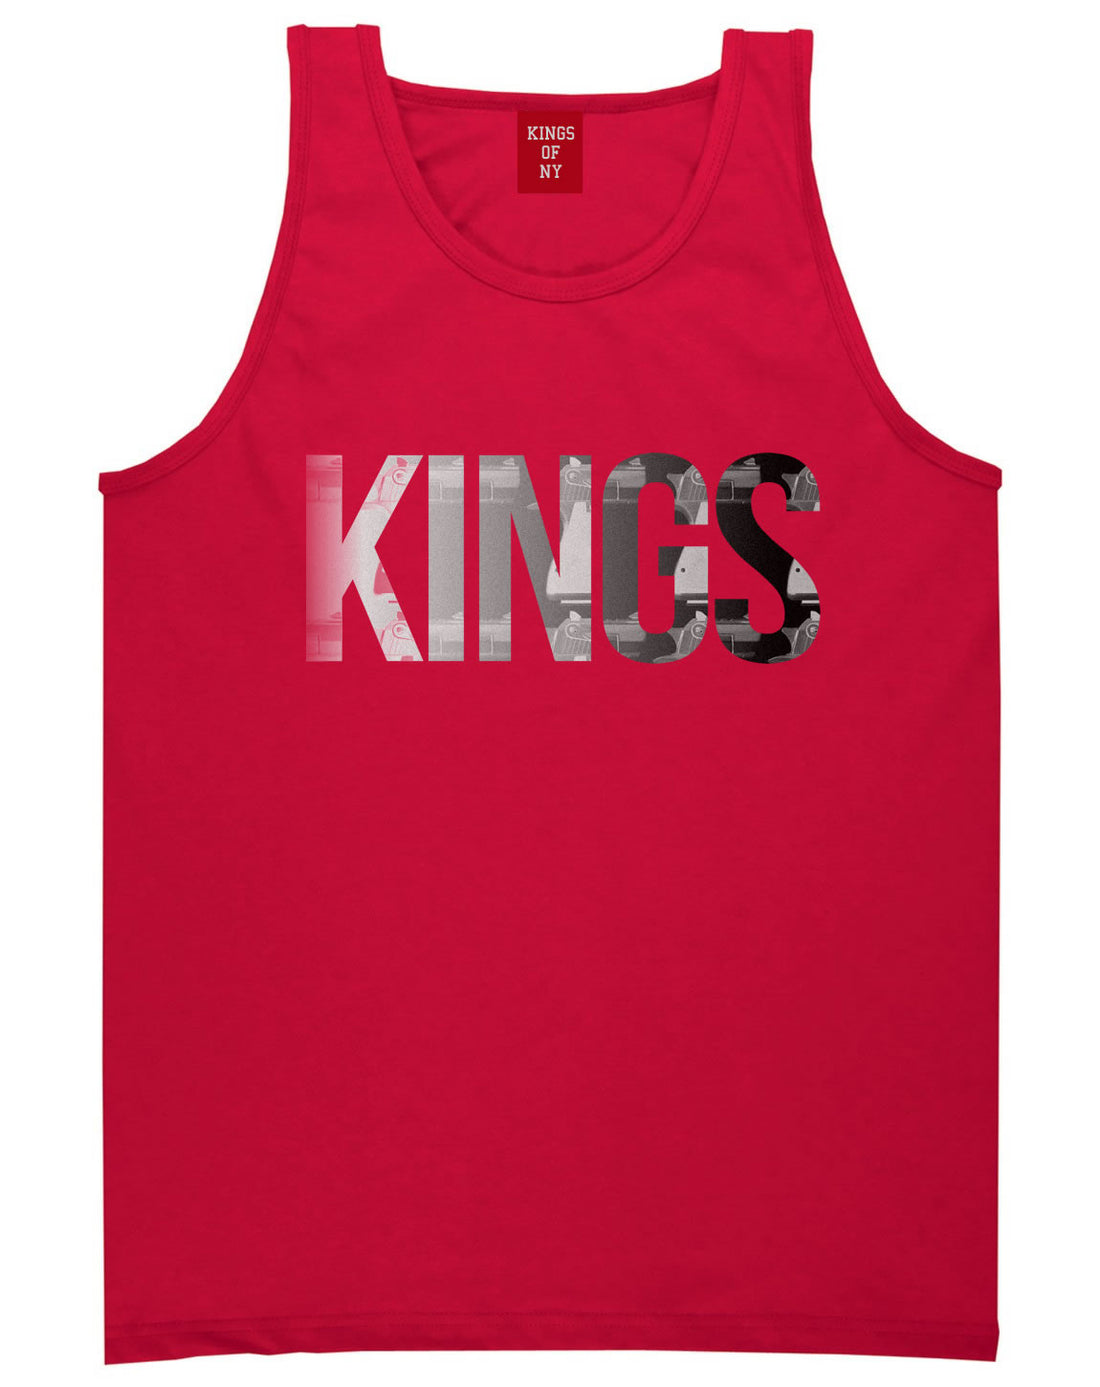 KINGS Gun Pattern Print Tank Top in Red by Kings Of NY